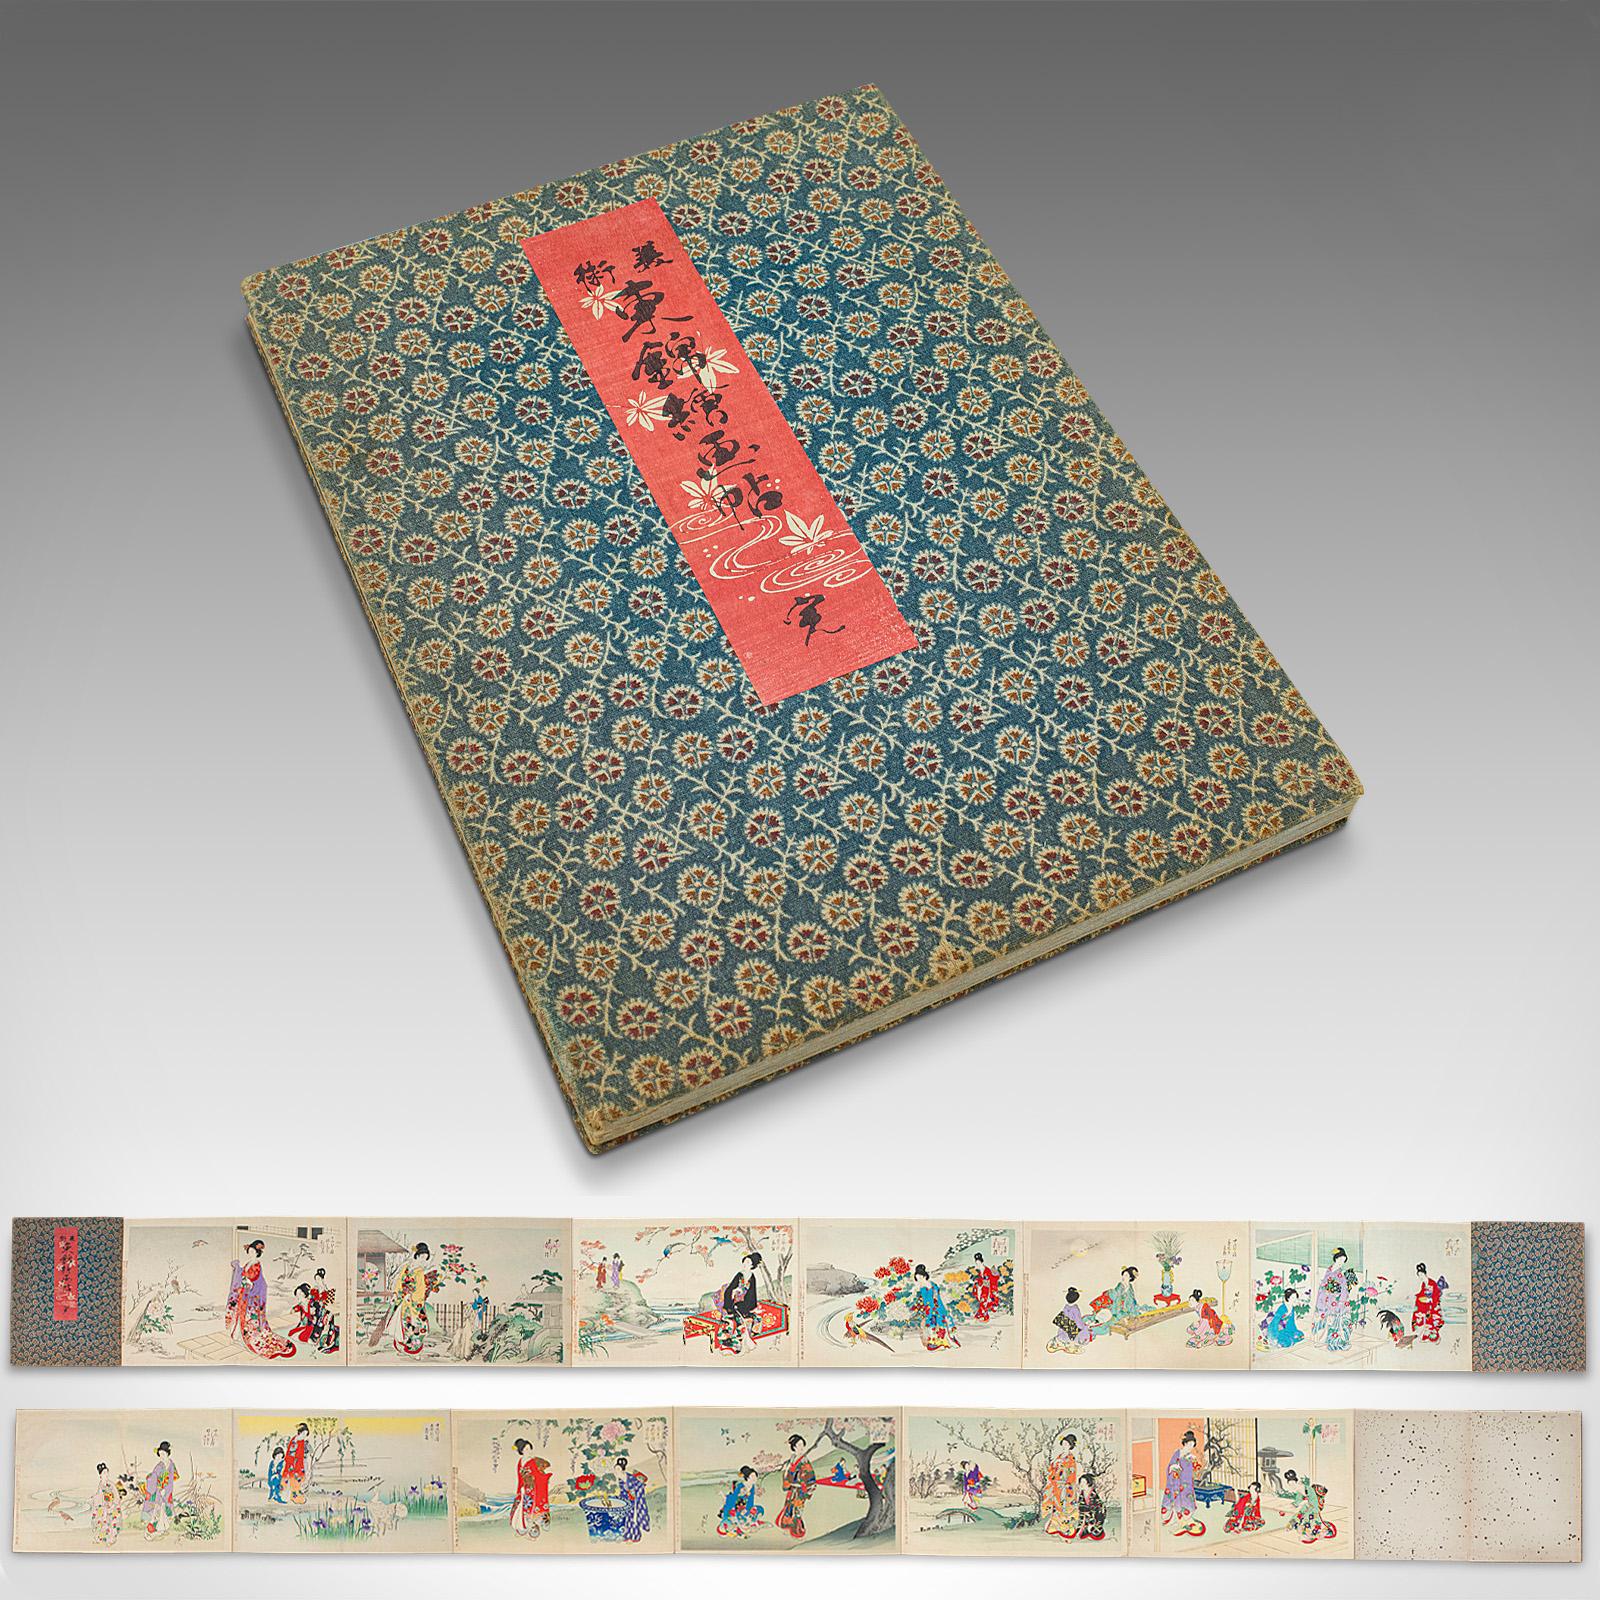 Dies ist ein antiker Bildband zum Aufklappen. Japanischer Farbholzschnitt auf Leinen mit farbigen Szenen aus der Meiji-Zeit, um 1900.

Auffallend im ausgefahrenen Zustand, mit einer Fülle von feinen Details auf beiden Seiten
Zeigt eine